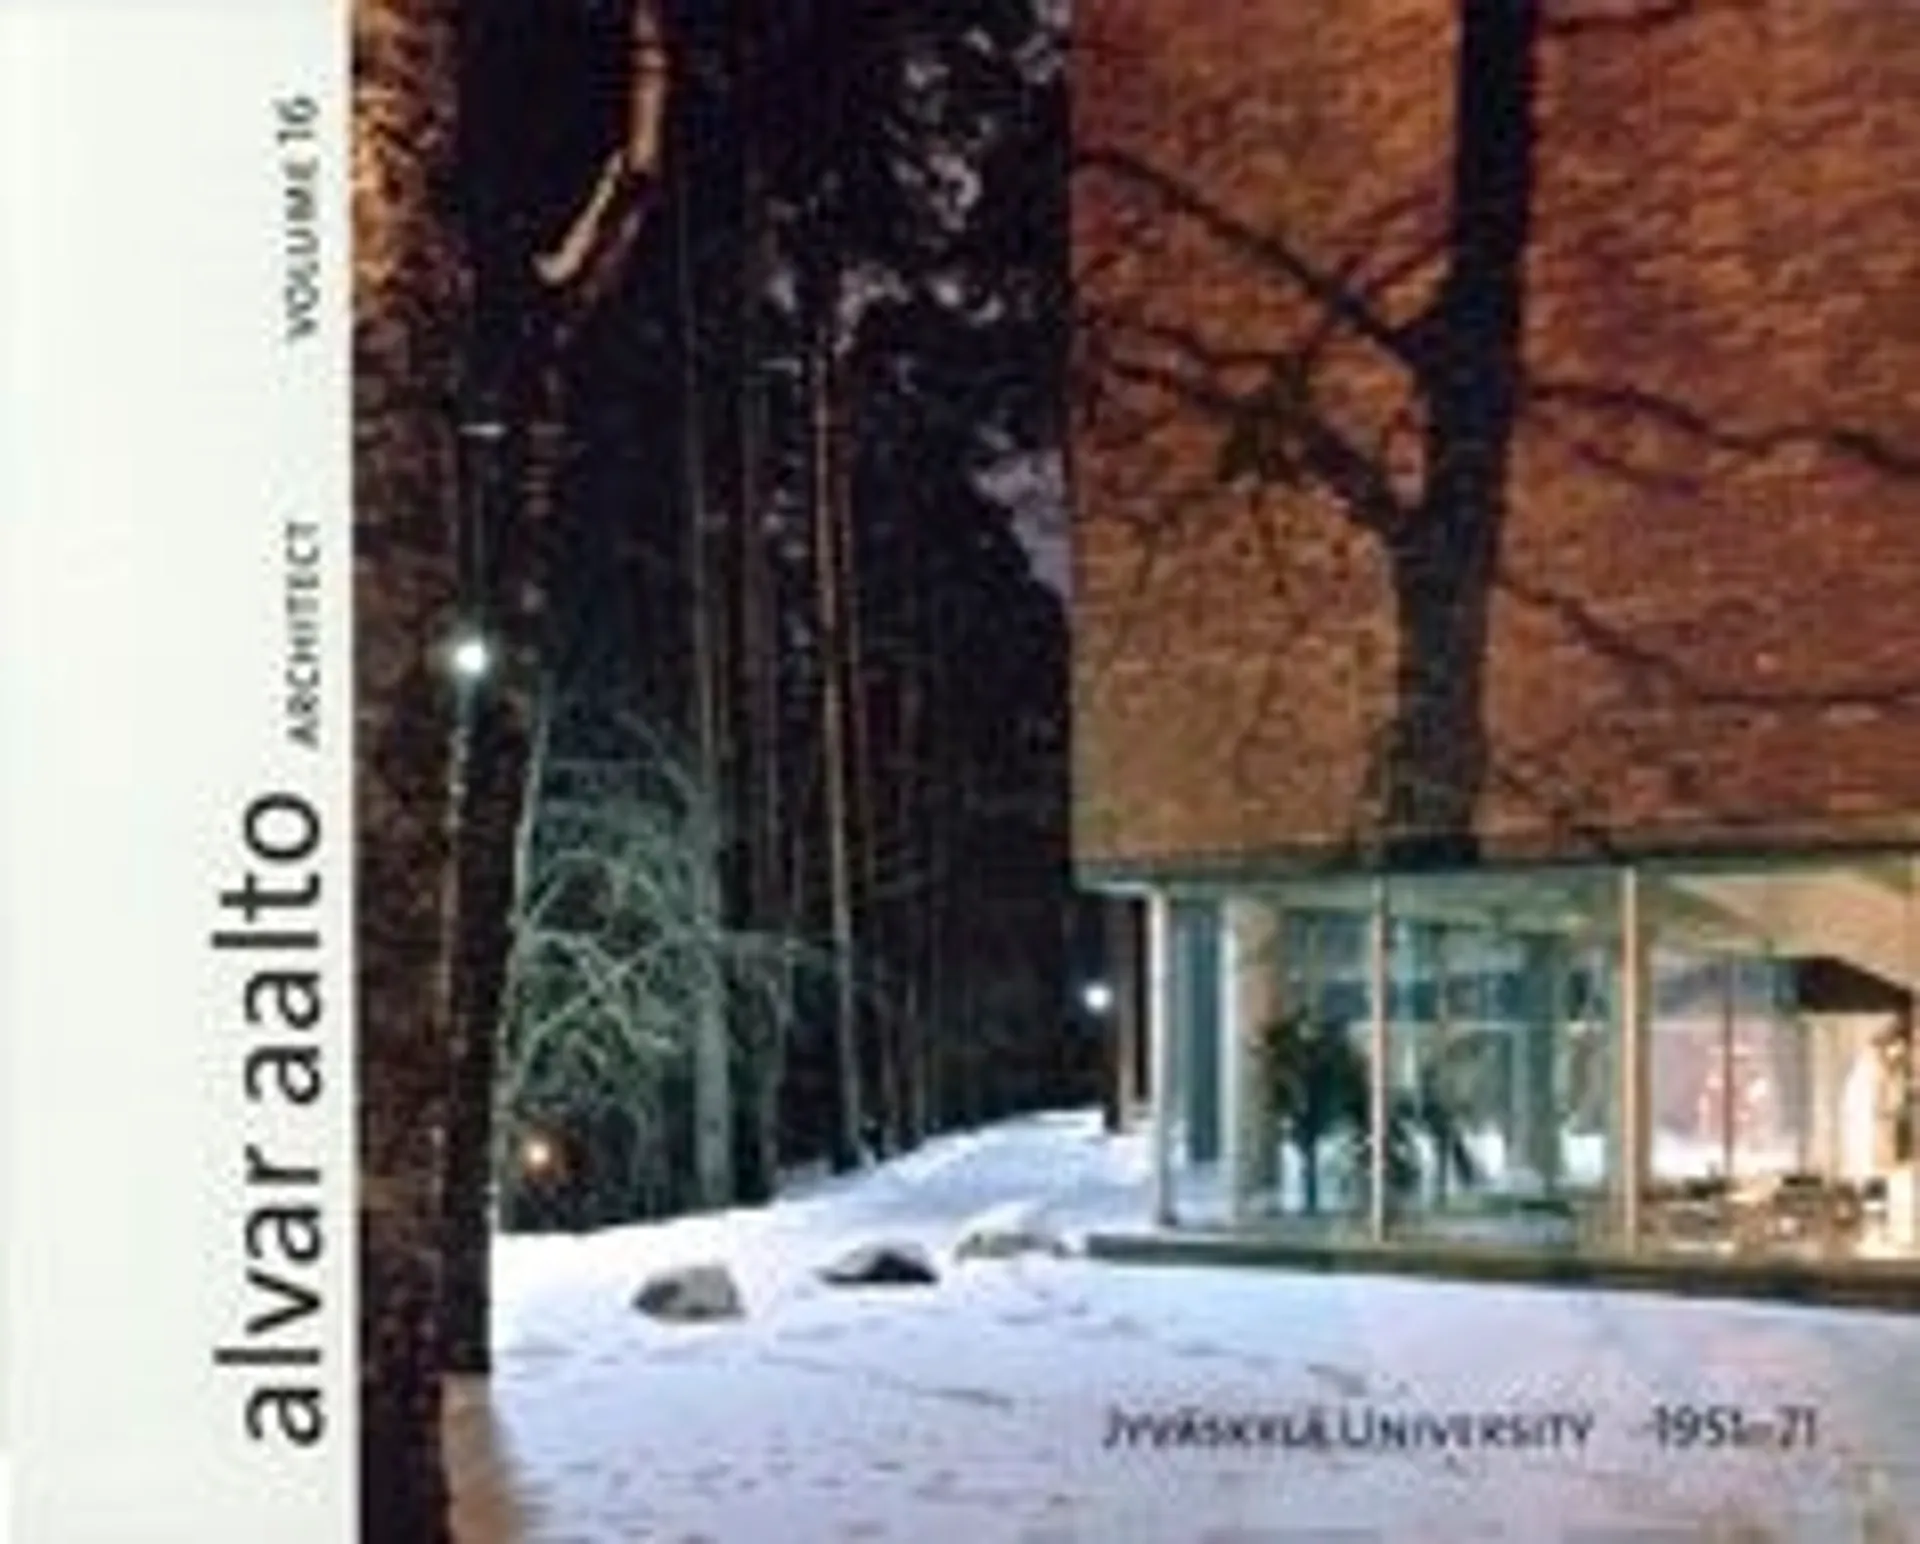 Alvar Aalto architect - volume 16 : Jyväskylä university 1951-71